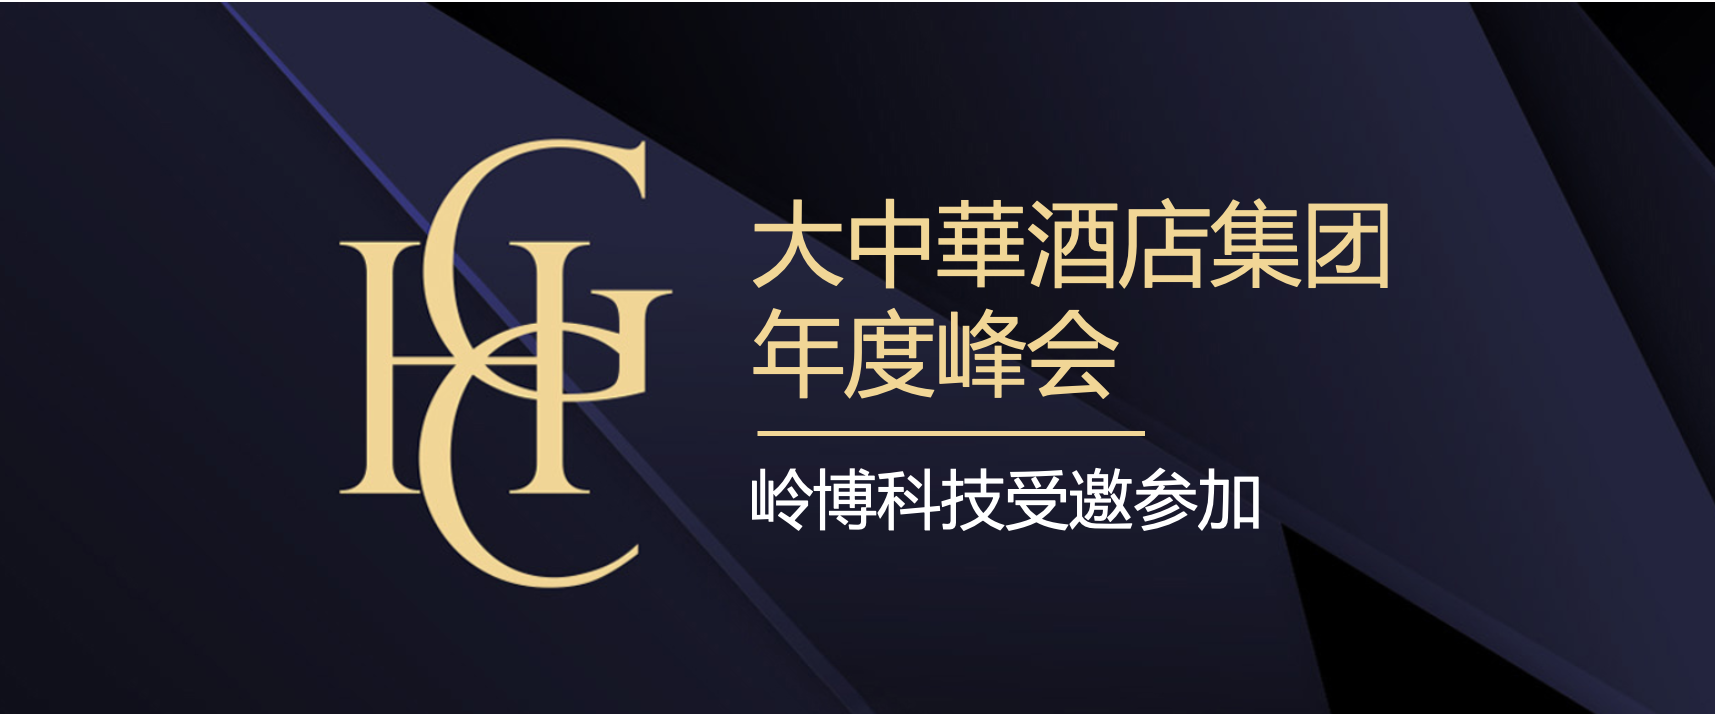 岭博科技受邀参加大中华酒店集团年度峰会